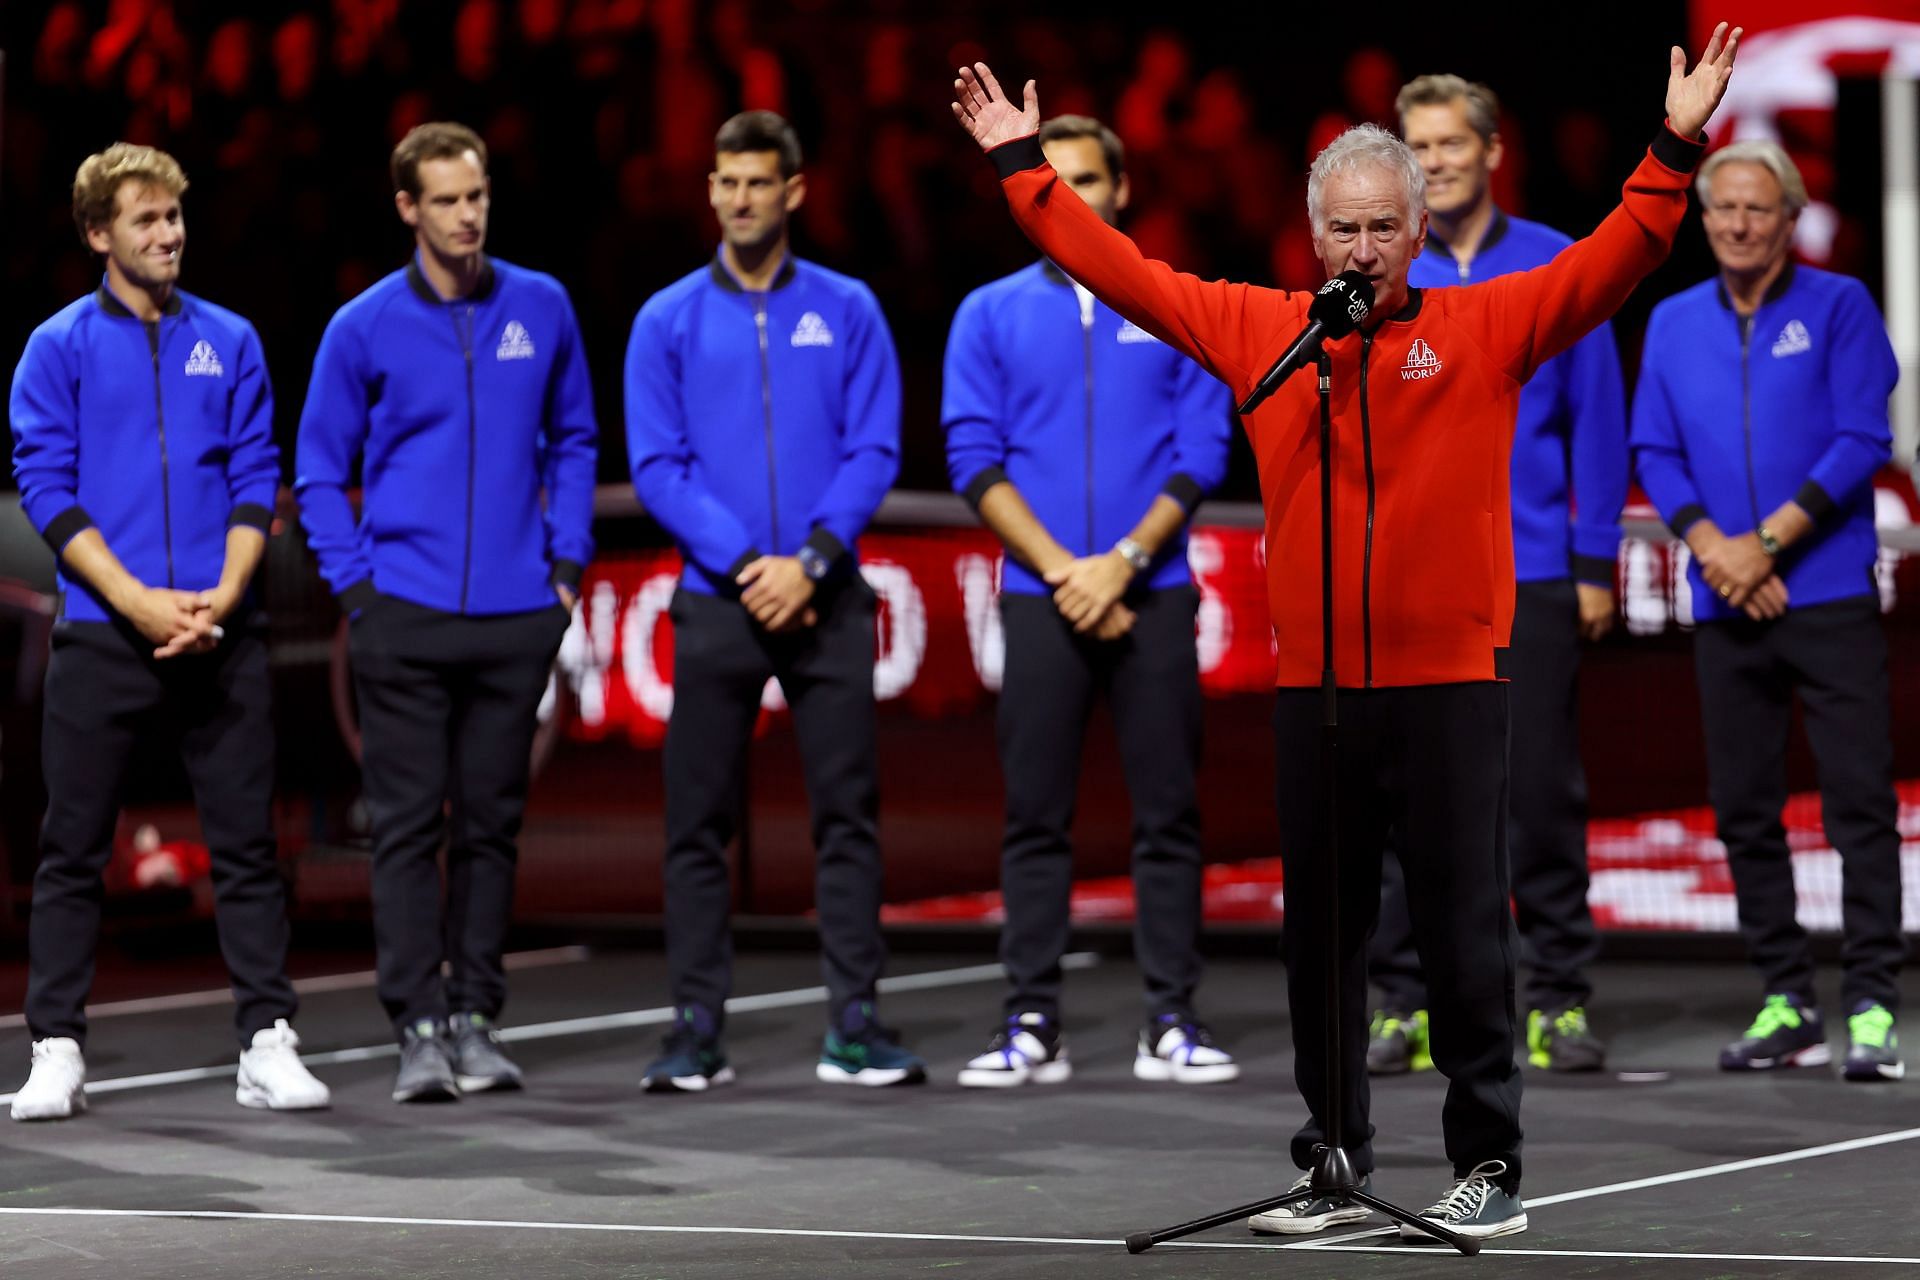 John McEnroe after Team World winning Laver Cup 2022